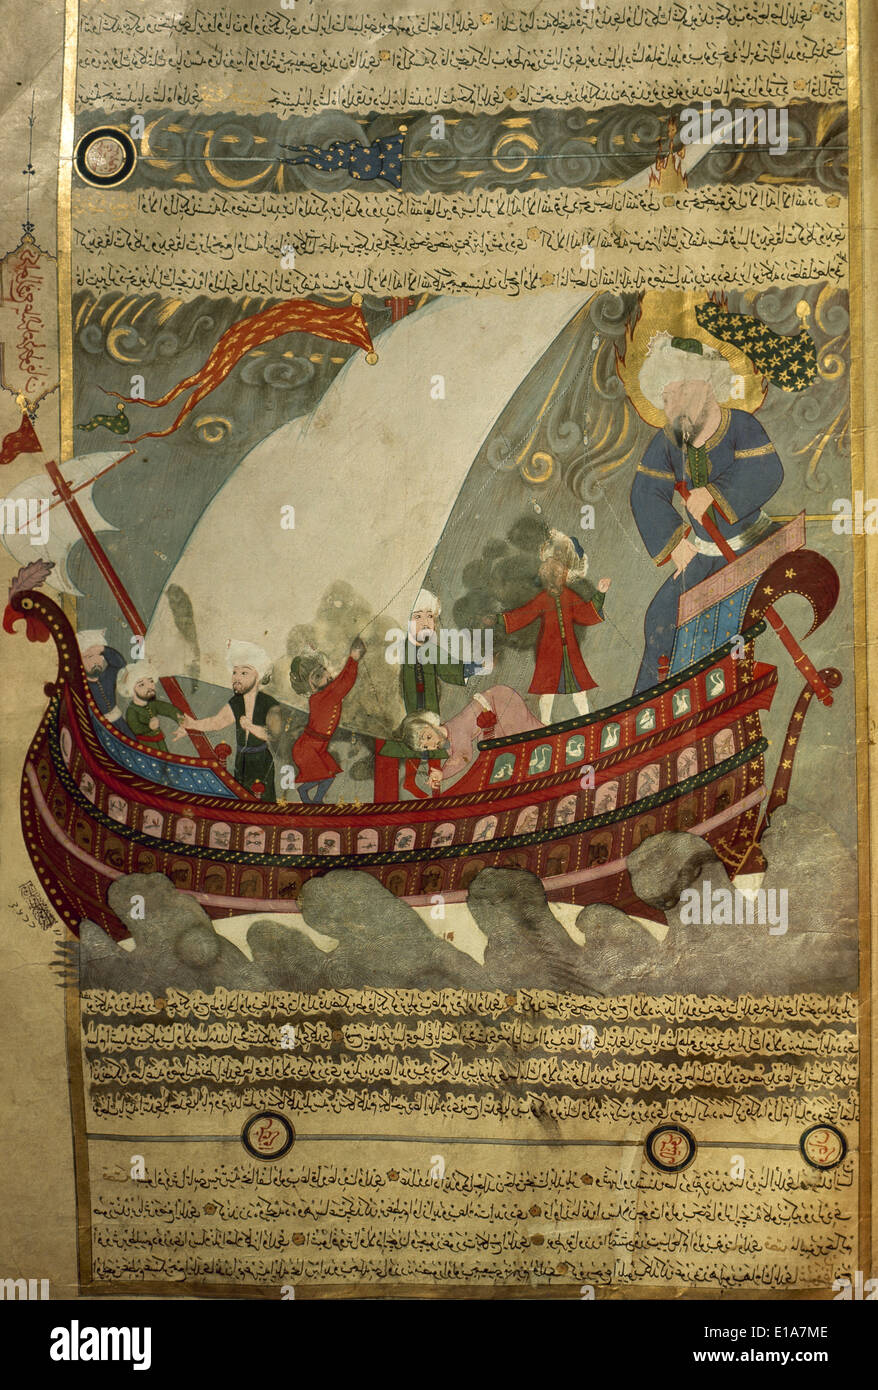 Arte Islámico. miniatura. Diluvio. Noah's Ark, rodeando la Kaaba (Meca). Museo de Arte Turco e Islámico Turquía Foto de stock